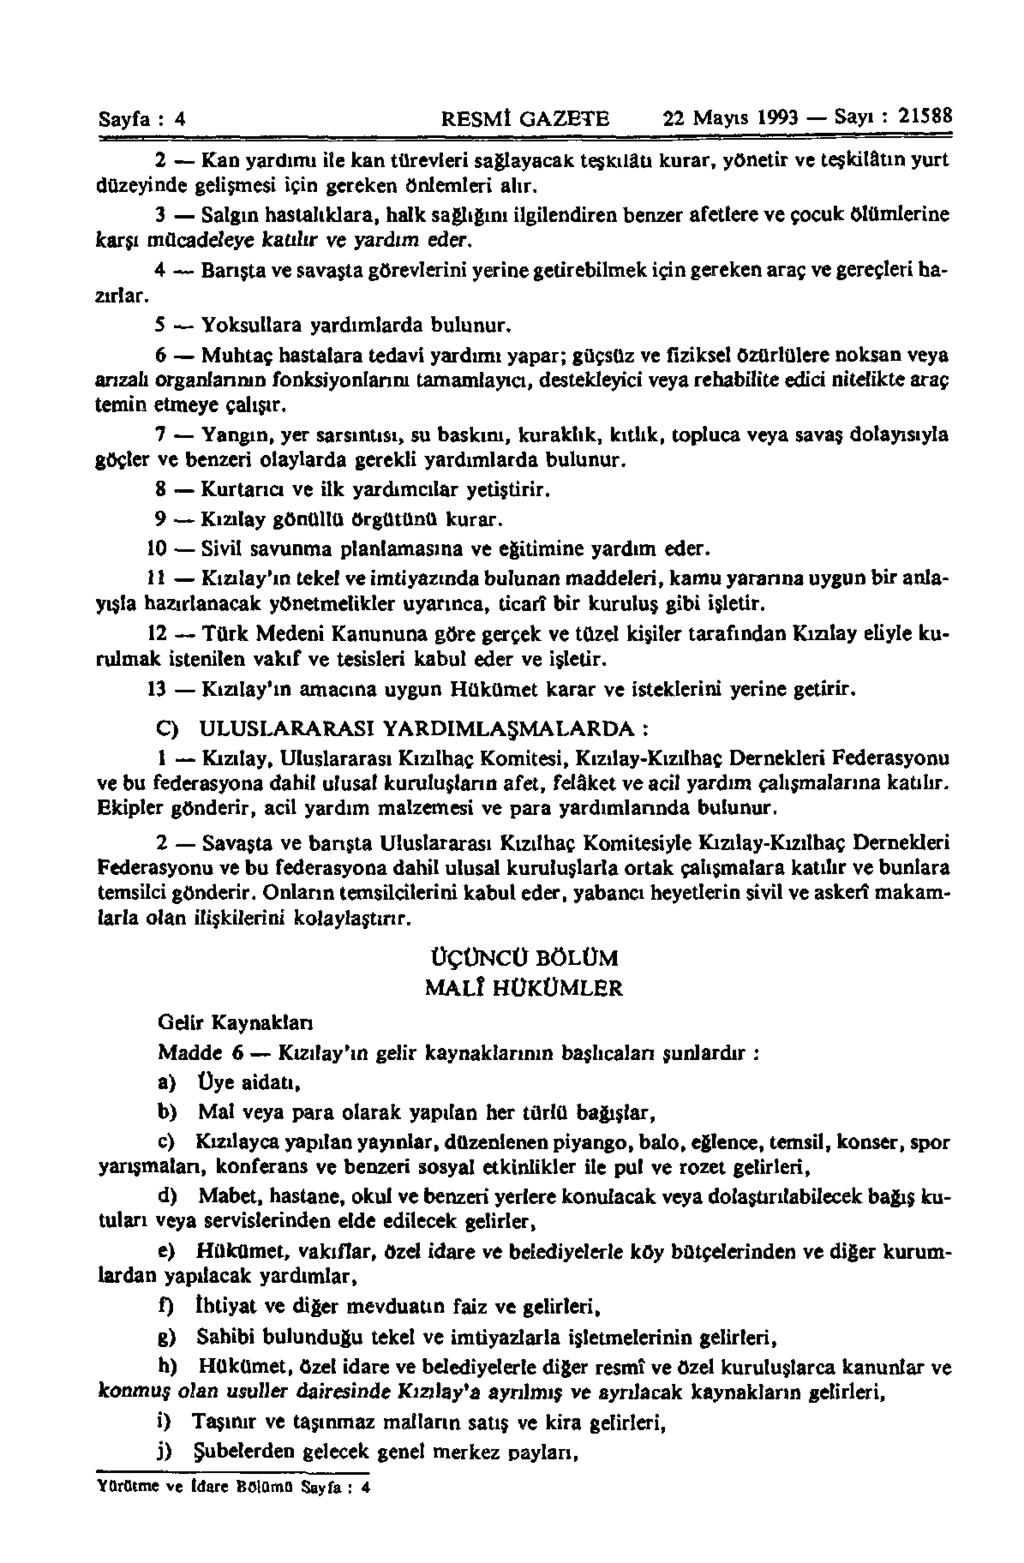 Sayfa : 4 RESMÎ GAZETE 22 Mayıs 1993 Sayı : 21588 2 Kan yardımı ile kan türevleri sağlayacak teşkilâtı kurar, yönetir ve teşkilâtın yurt düzeyinde gelişmesi için gereken önlemleri alır.